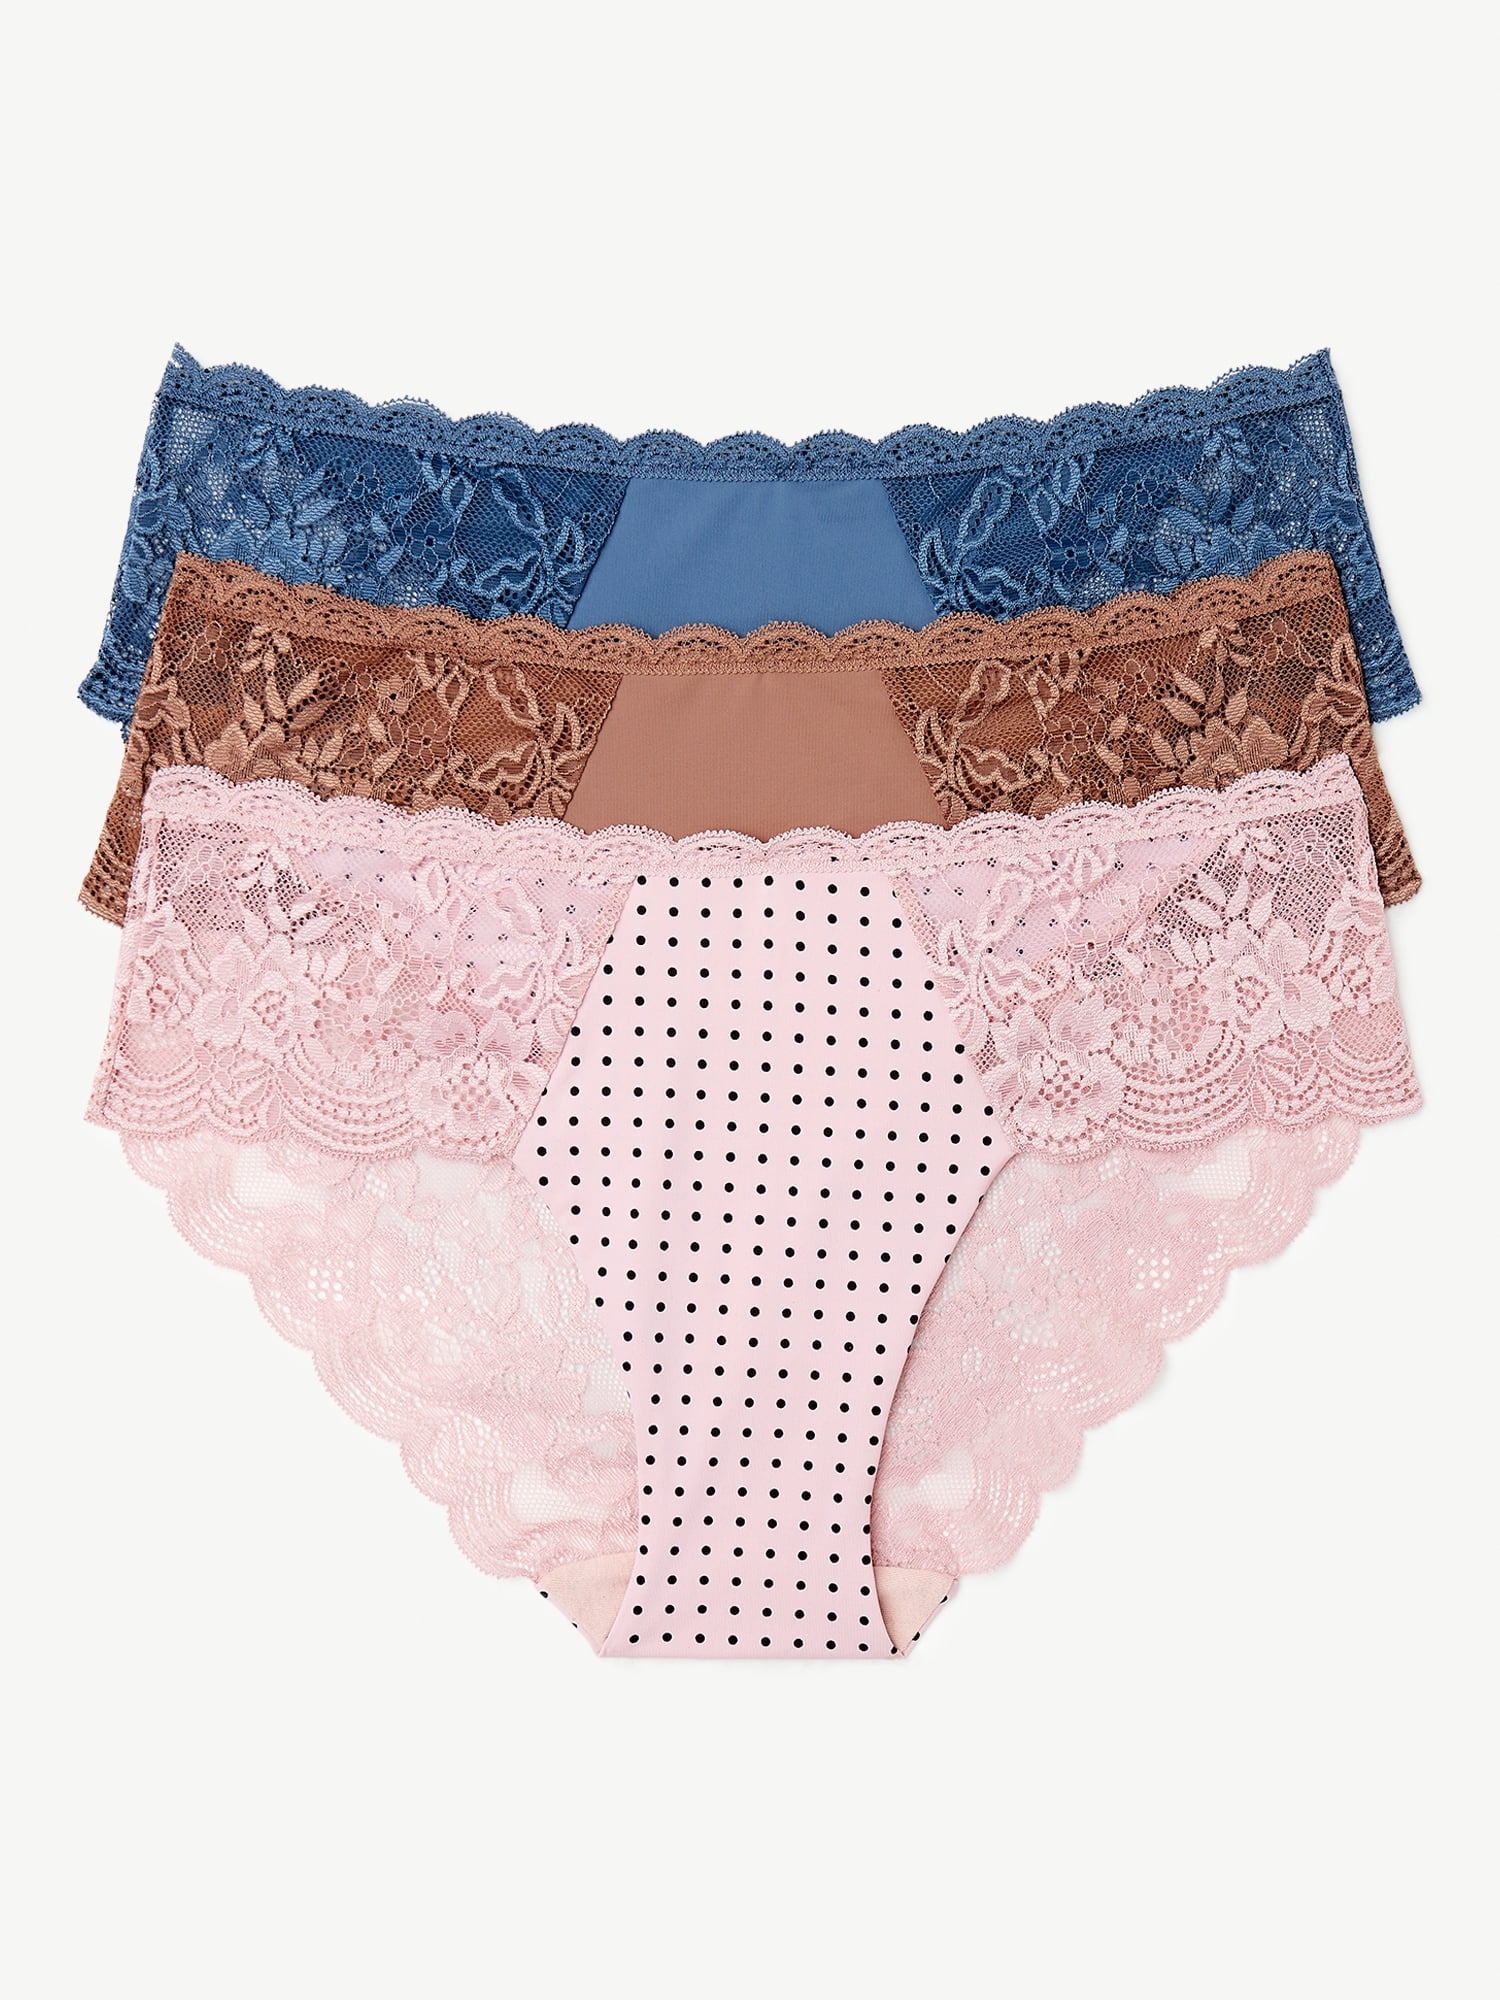 Joyspun Women's Microfiber Hipster Panties, 3-Pack, Sizes XS to 3XL 